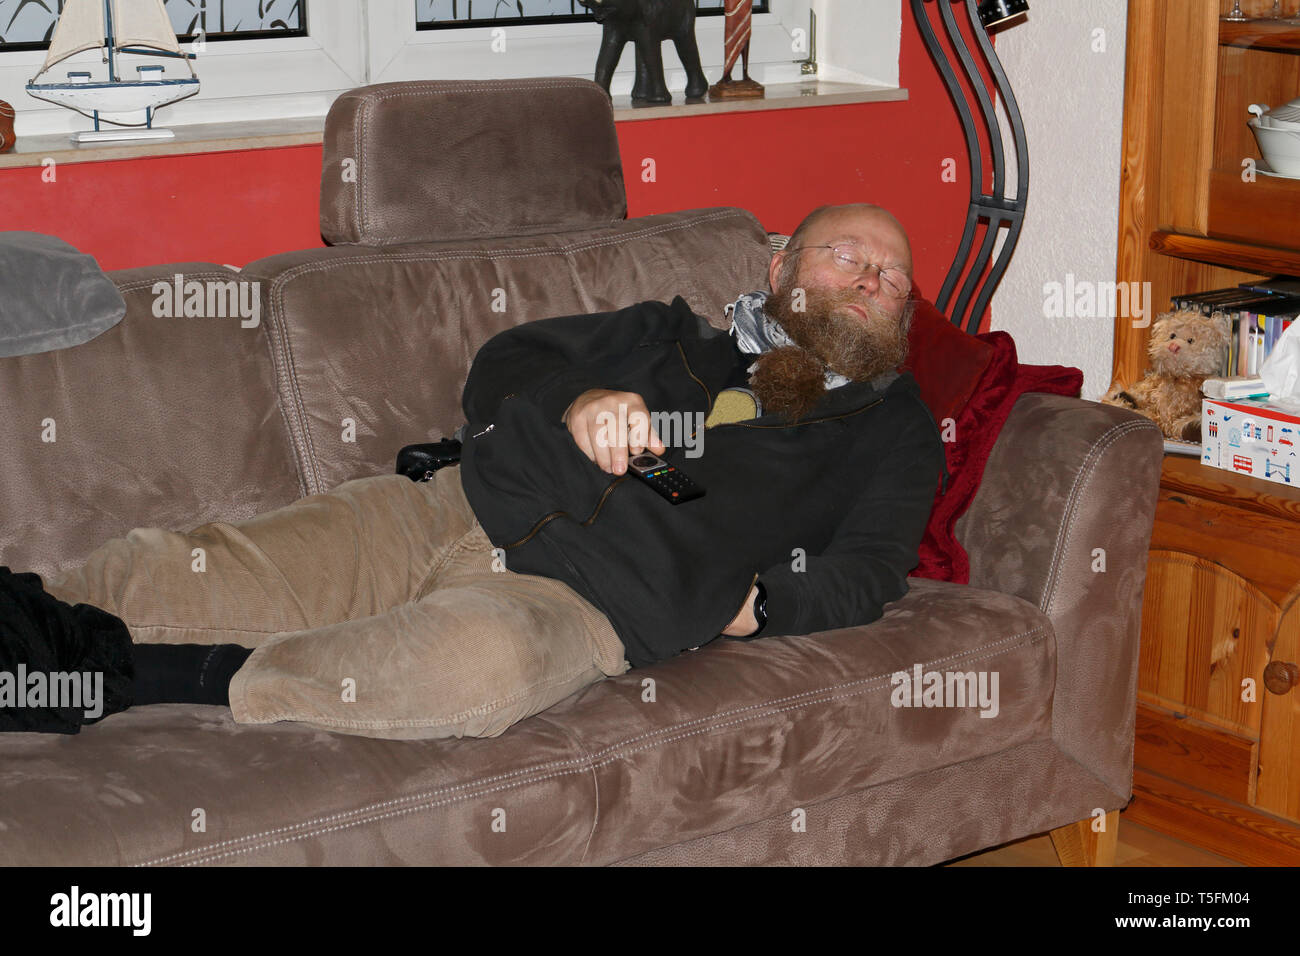 Mann mit langem Bart, mit der Fernbedienung in der Hand, ist auf der Couch eingeschlafen Banque D'Images